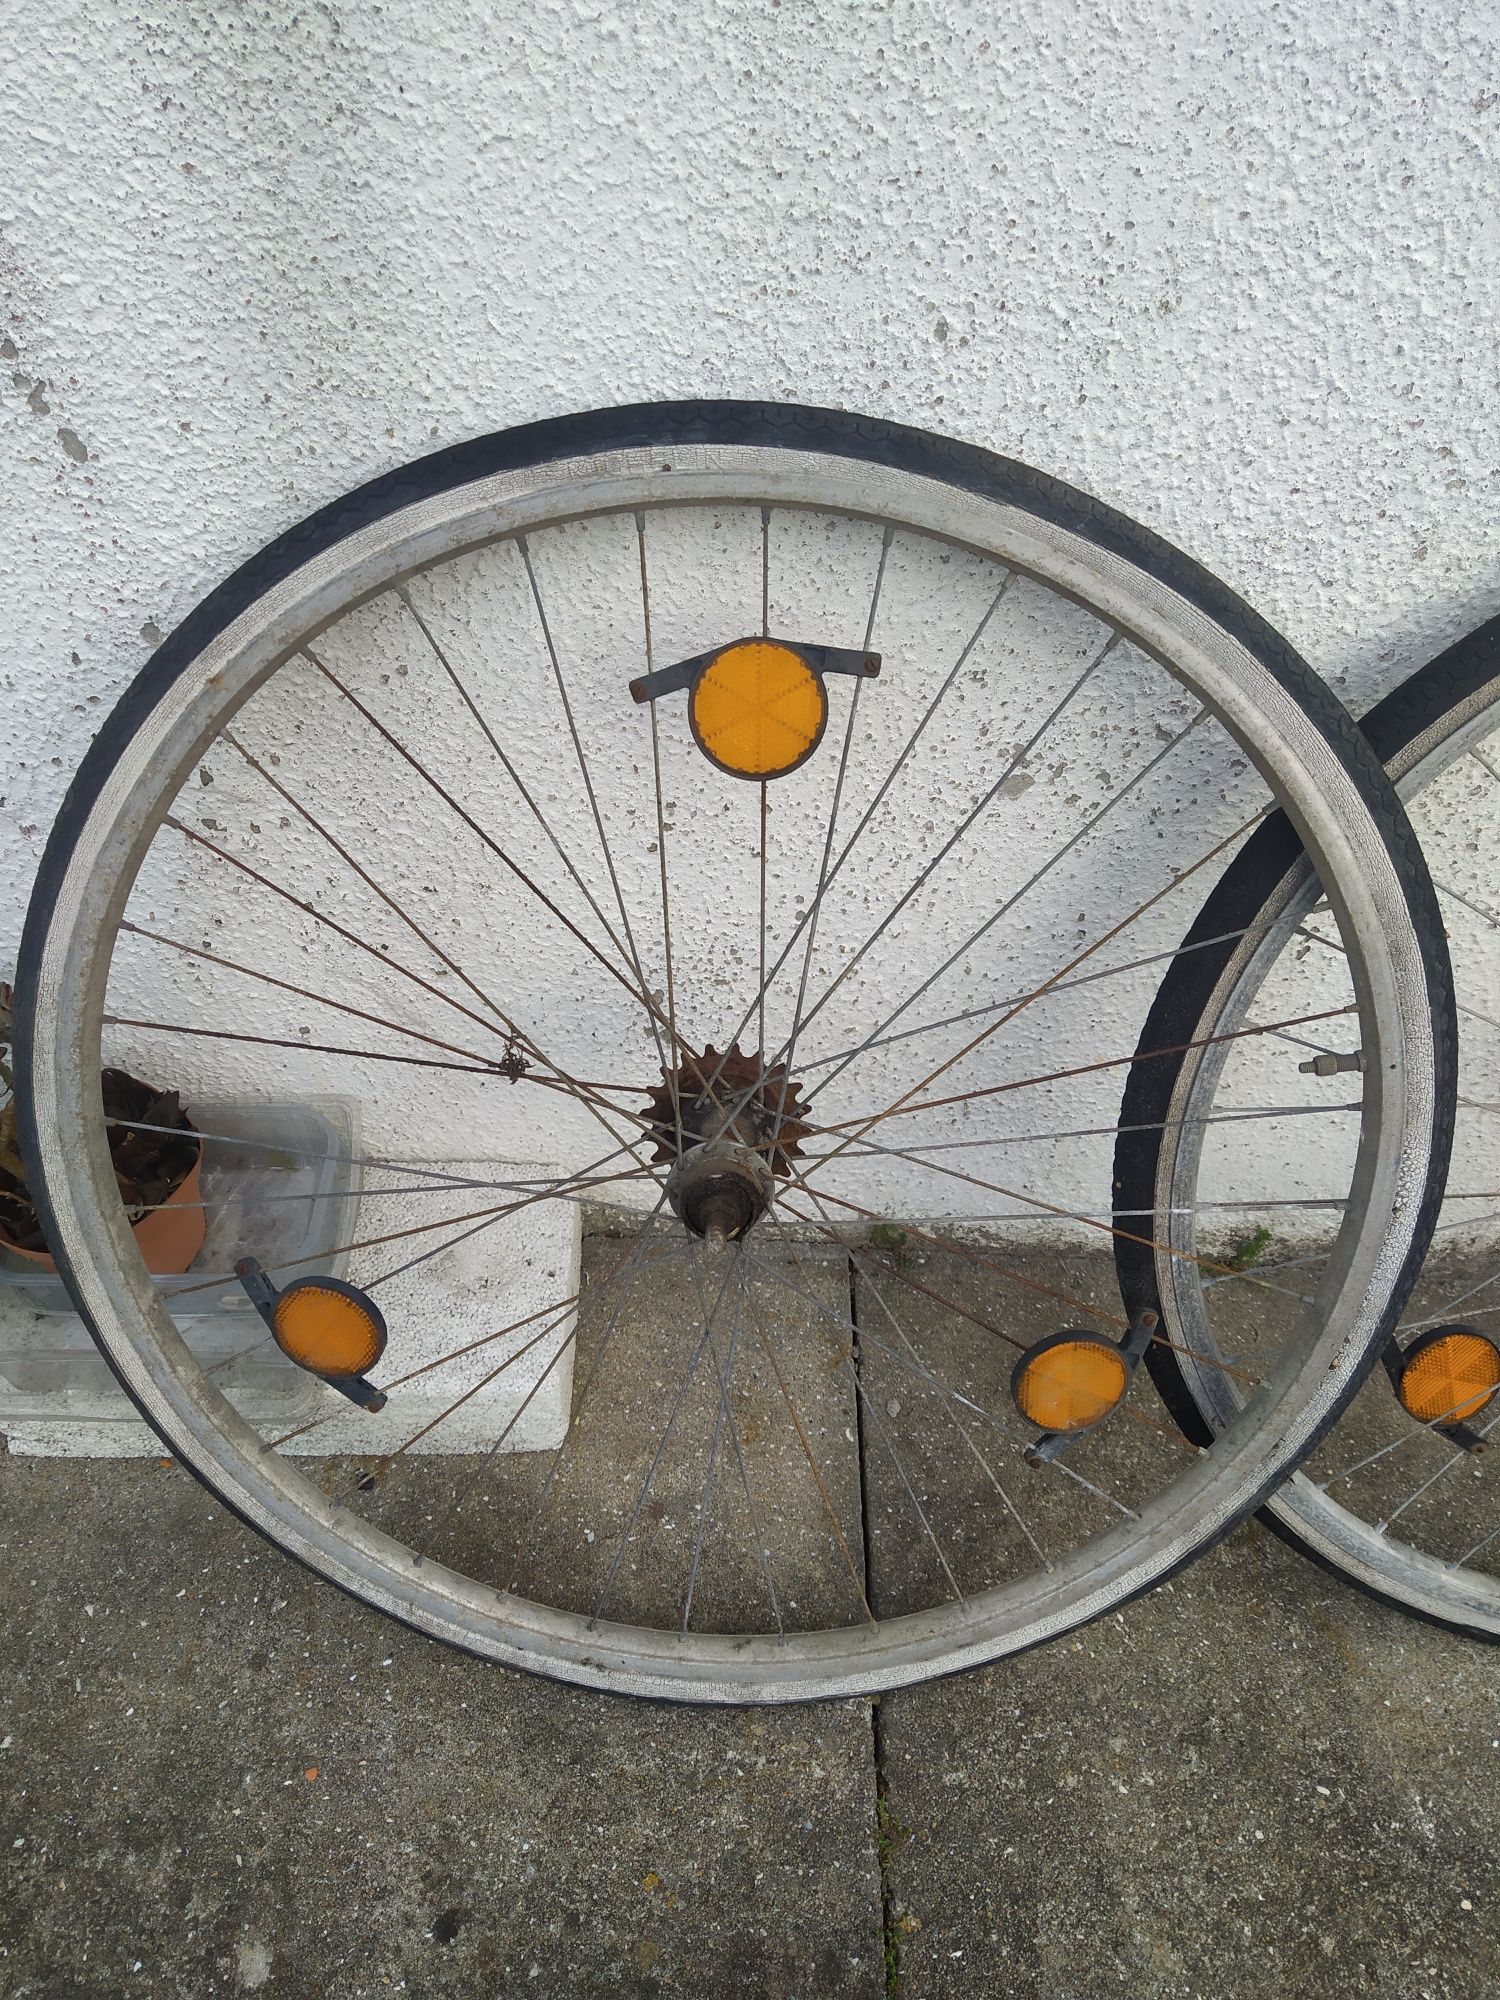 Vendo rodas para bicicleta de senhora Confersil- tamanho 32"